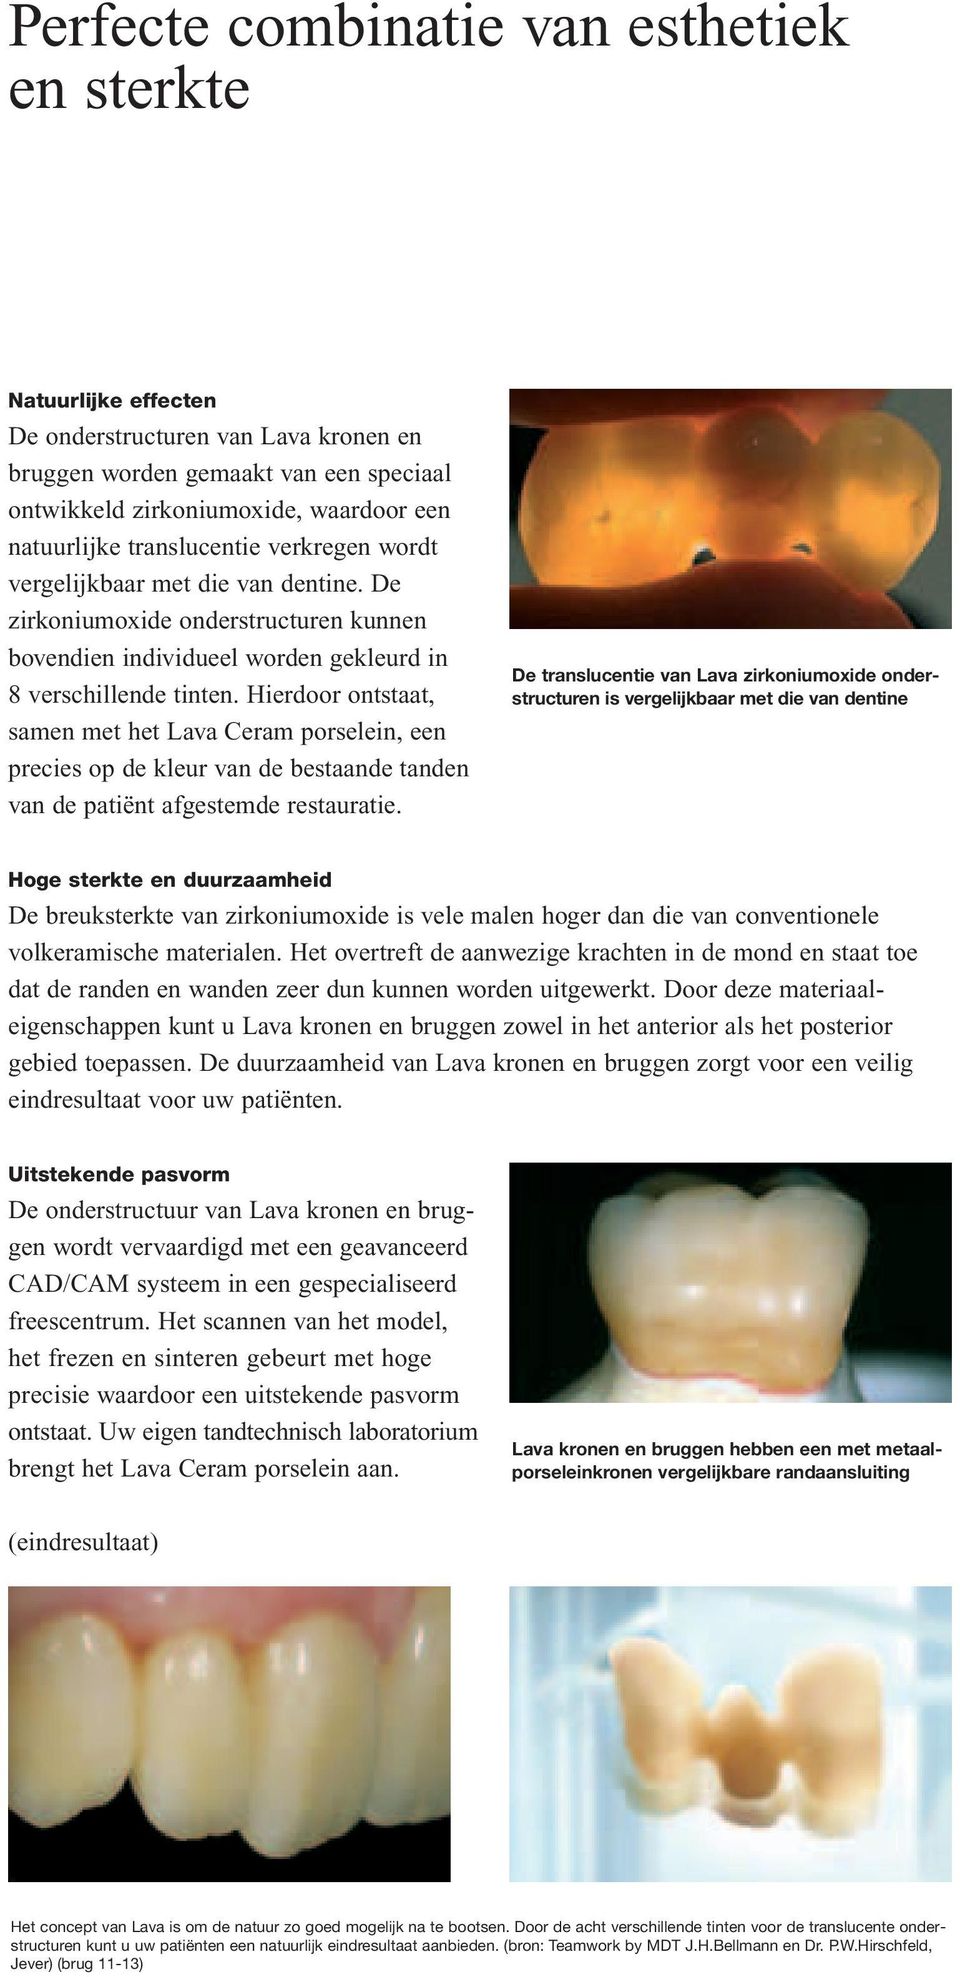 Hierdoor ontstaat, samen met het Lava Ceram porselein, een precies op de kleur van de bestaande tanden van de patiënt afgestemde restauratie.